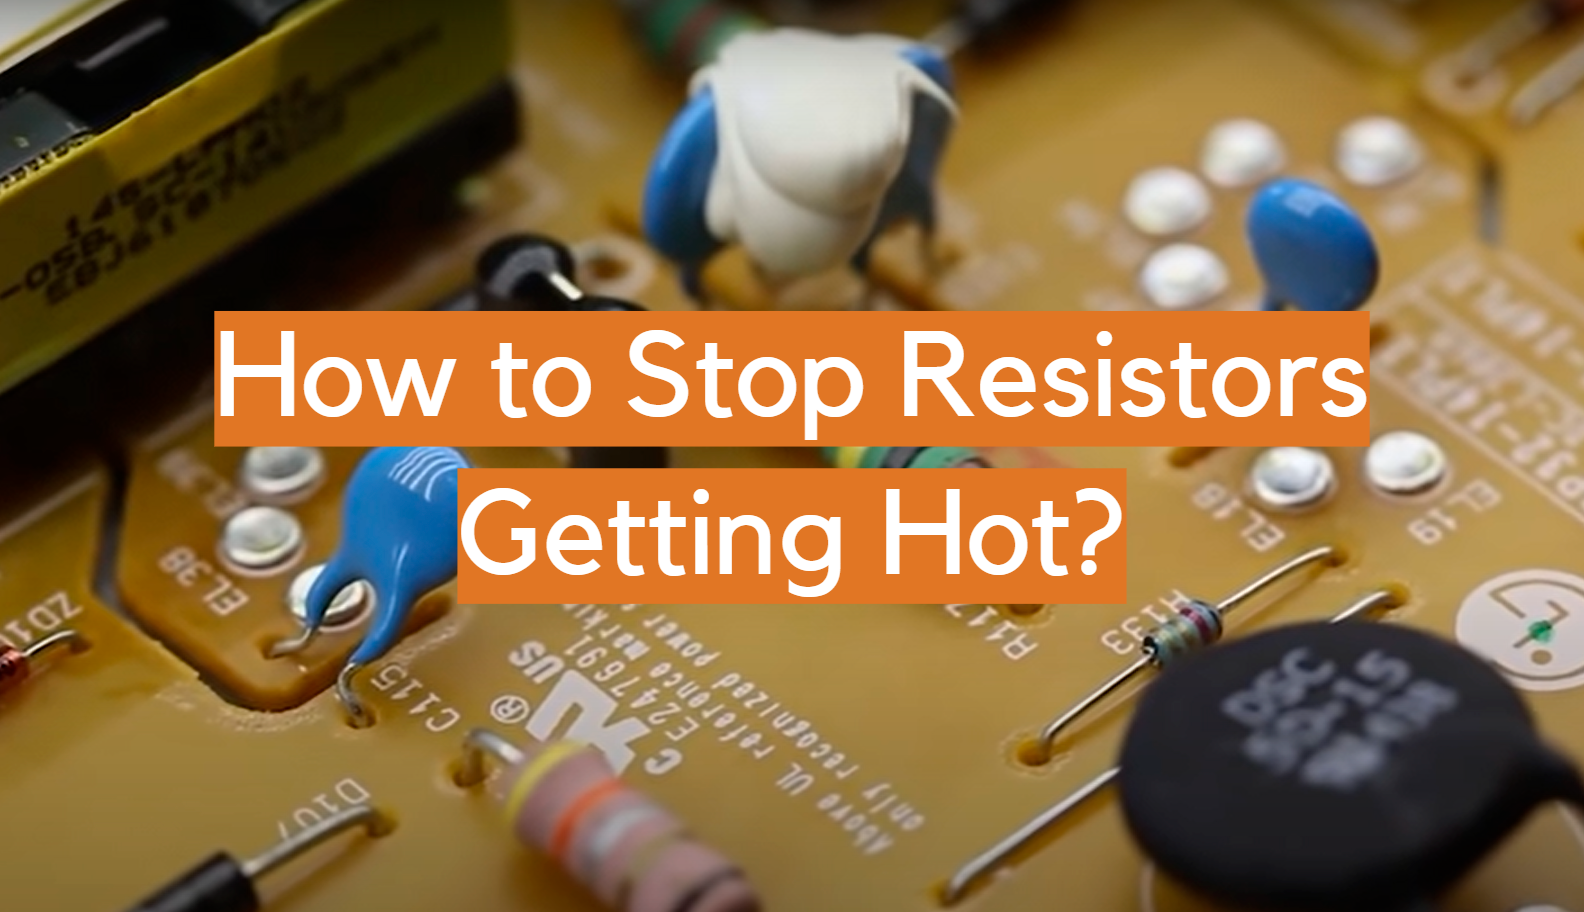 ¿Cómo evitar que las resistencias se calienten?